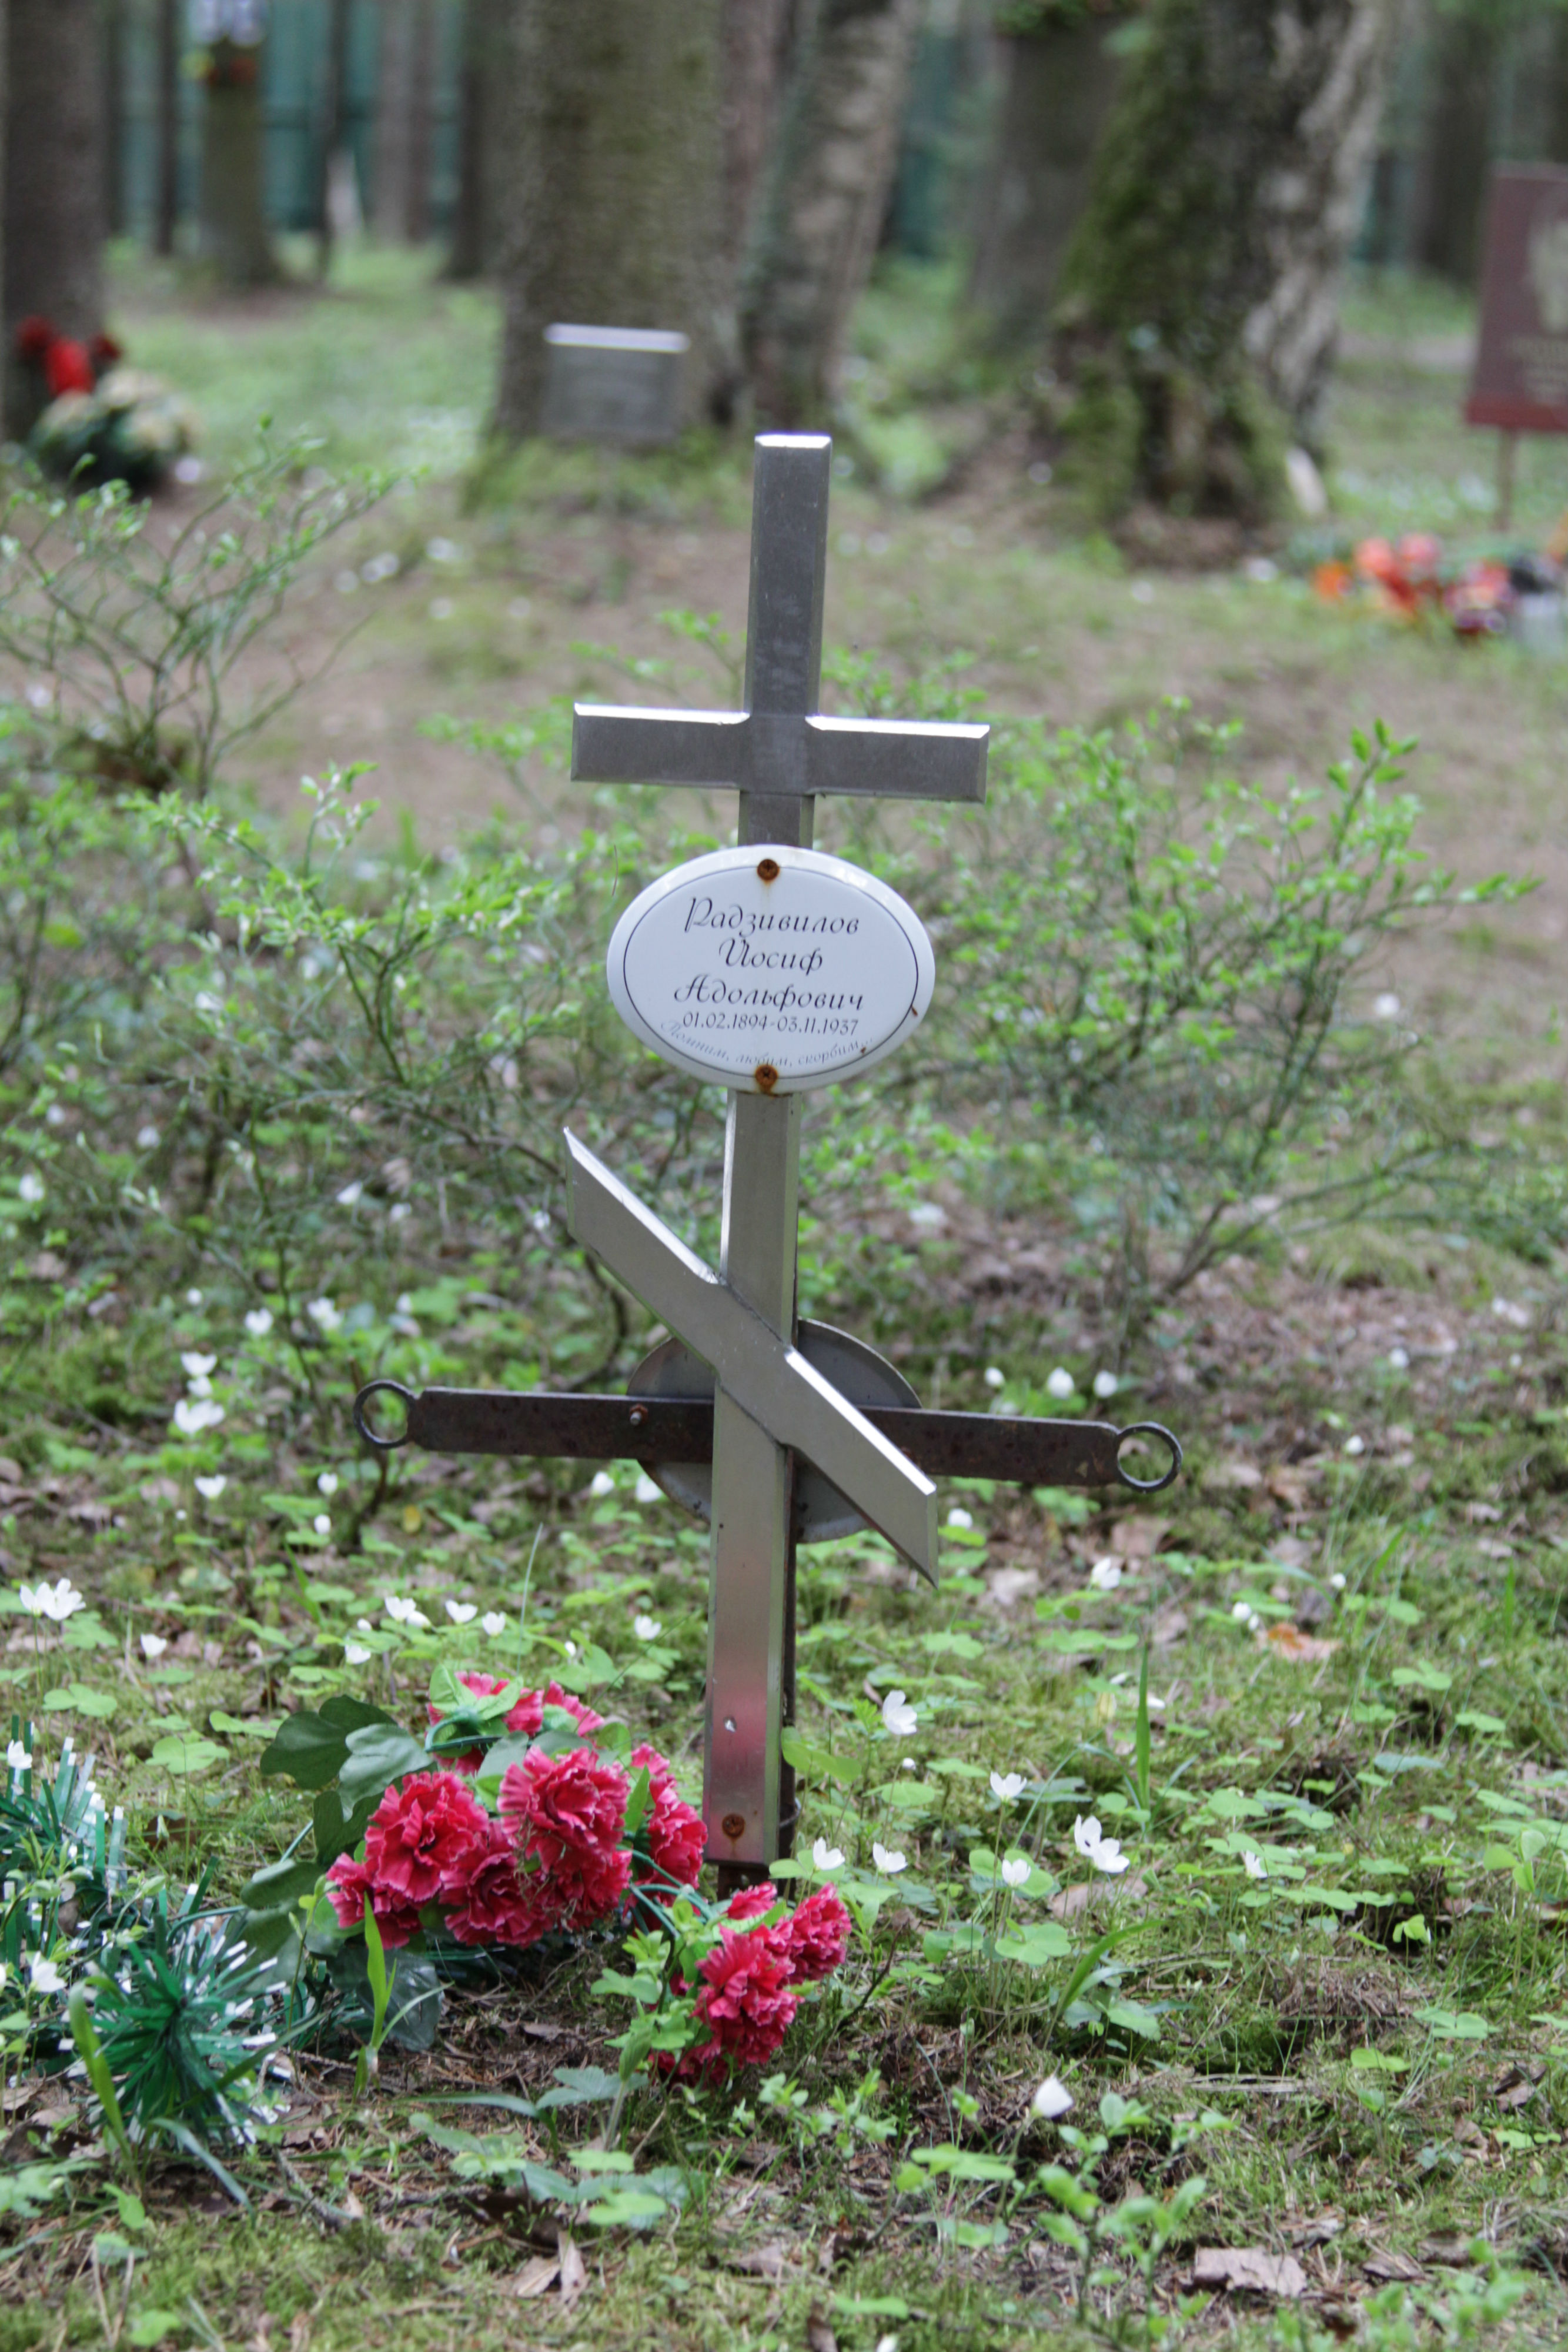 Памятный крест И. А. Радзивилову. Фото 18.05.2017